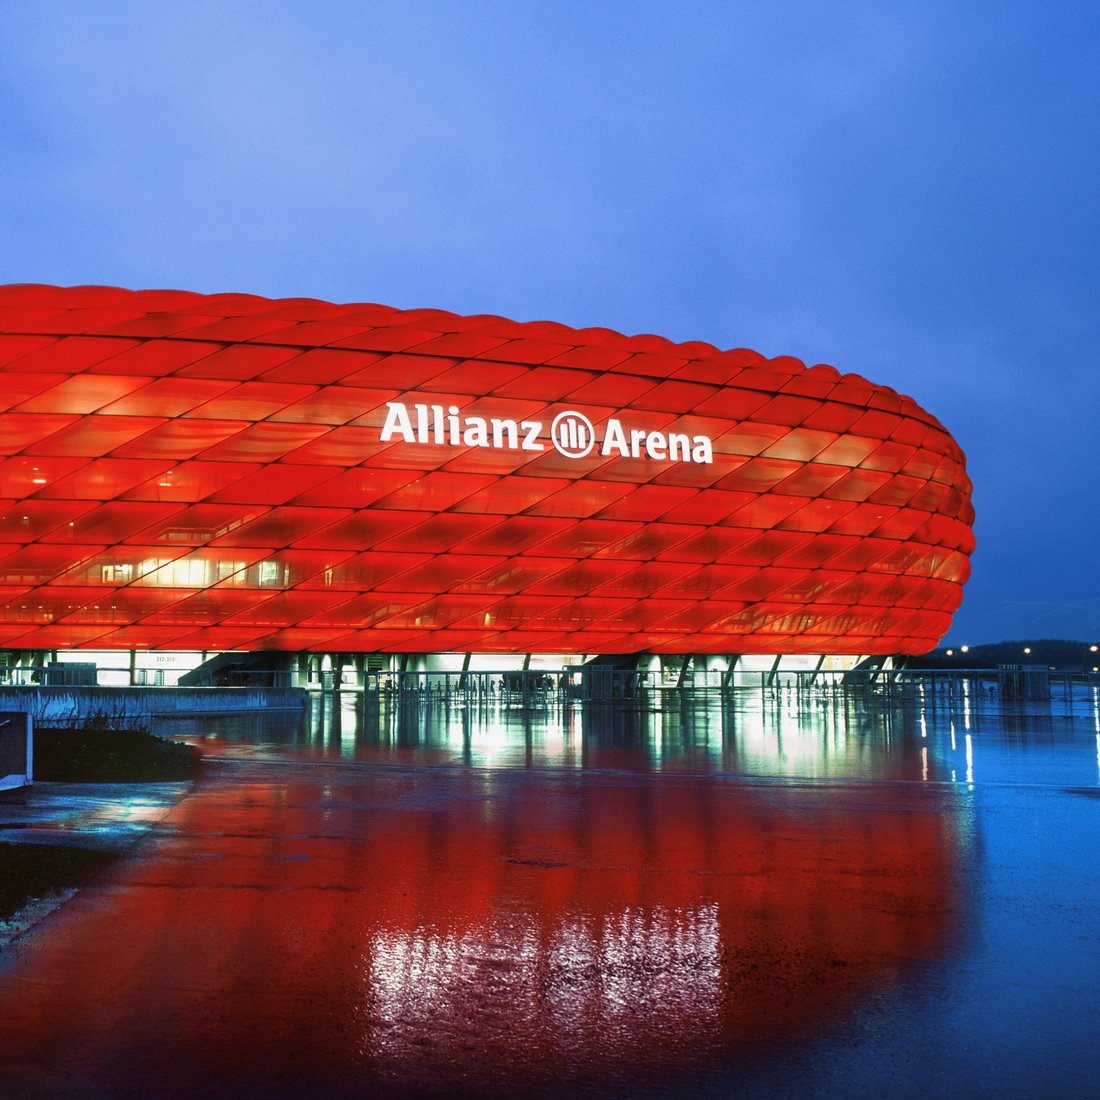 Allianz Arena illuminated